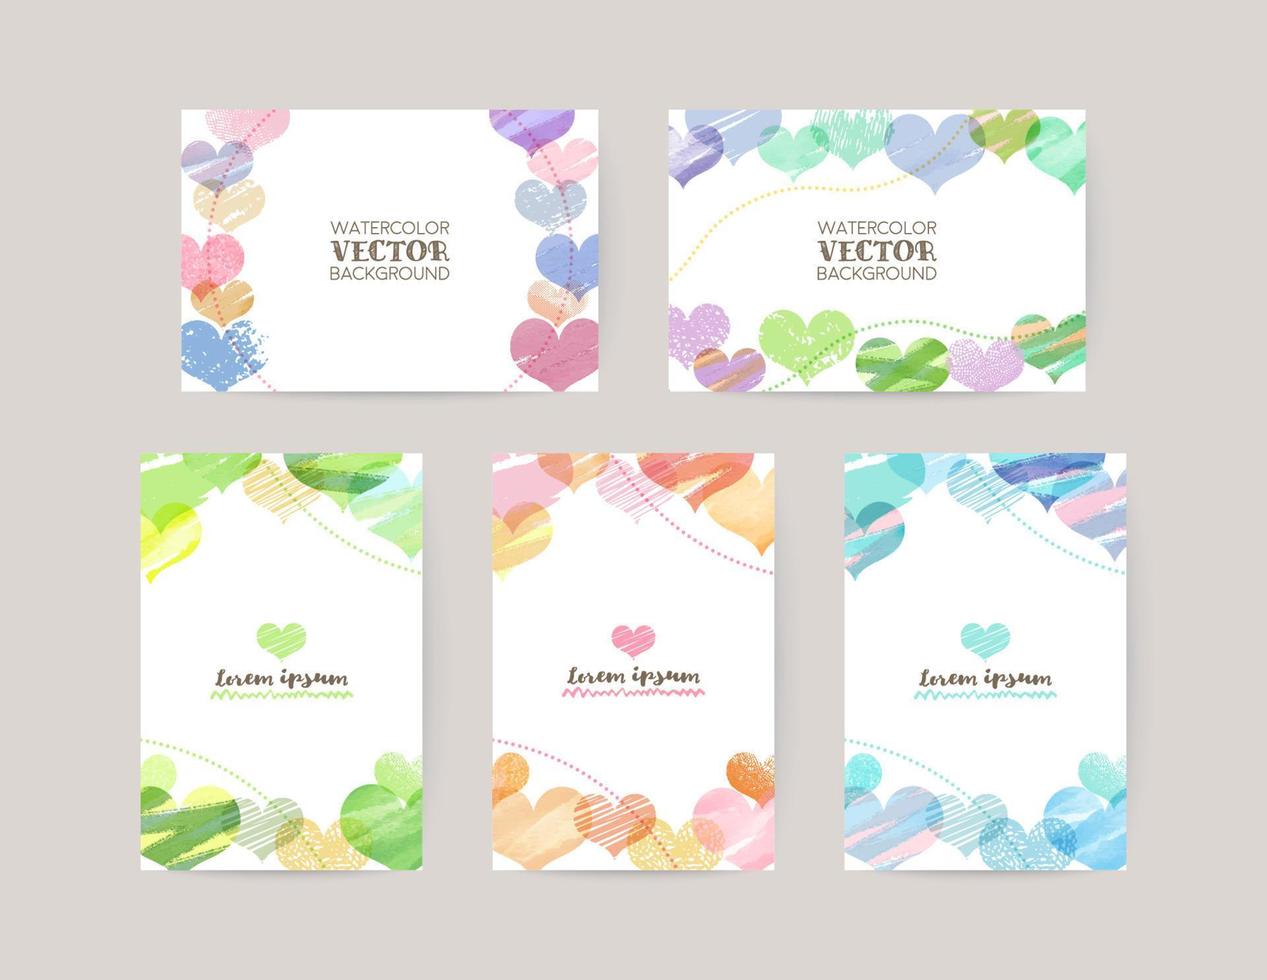 vektor kort design mall med färgrik hjärtan, vattenfärg dekoration på vit bakgrund uppsättning